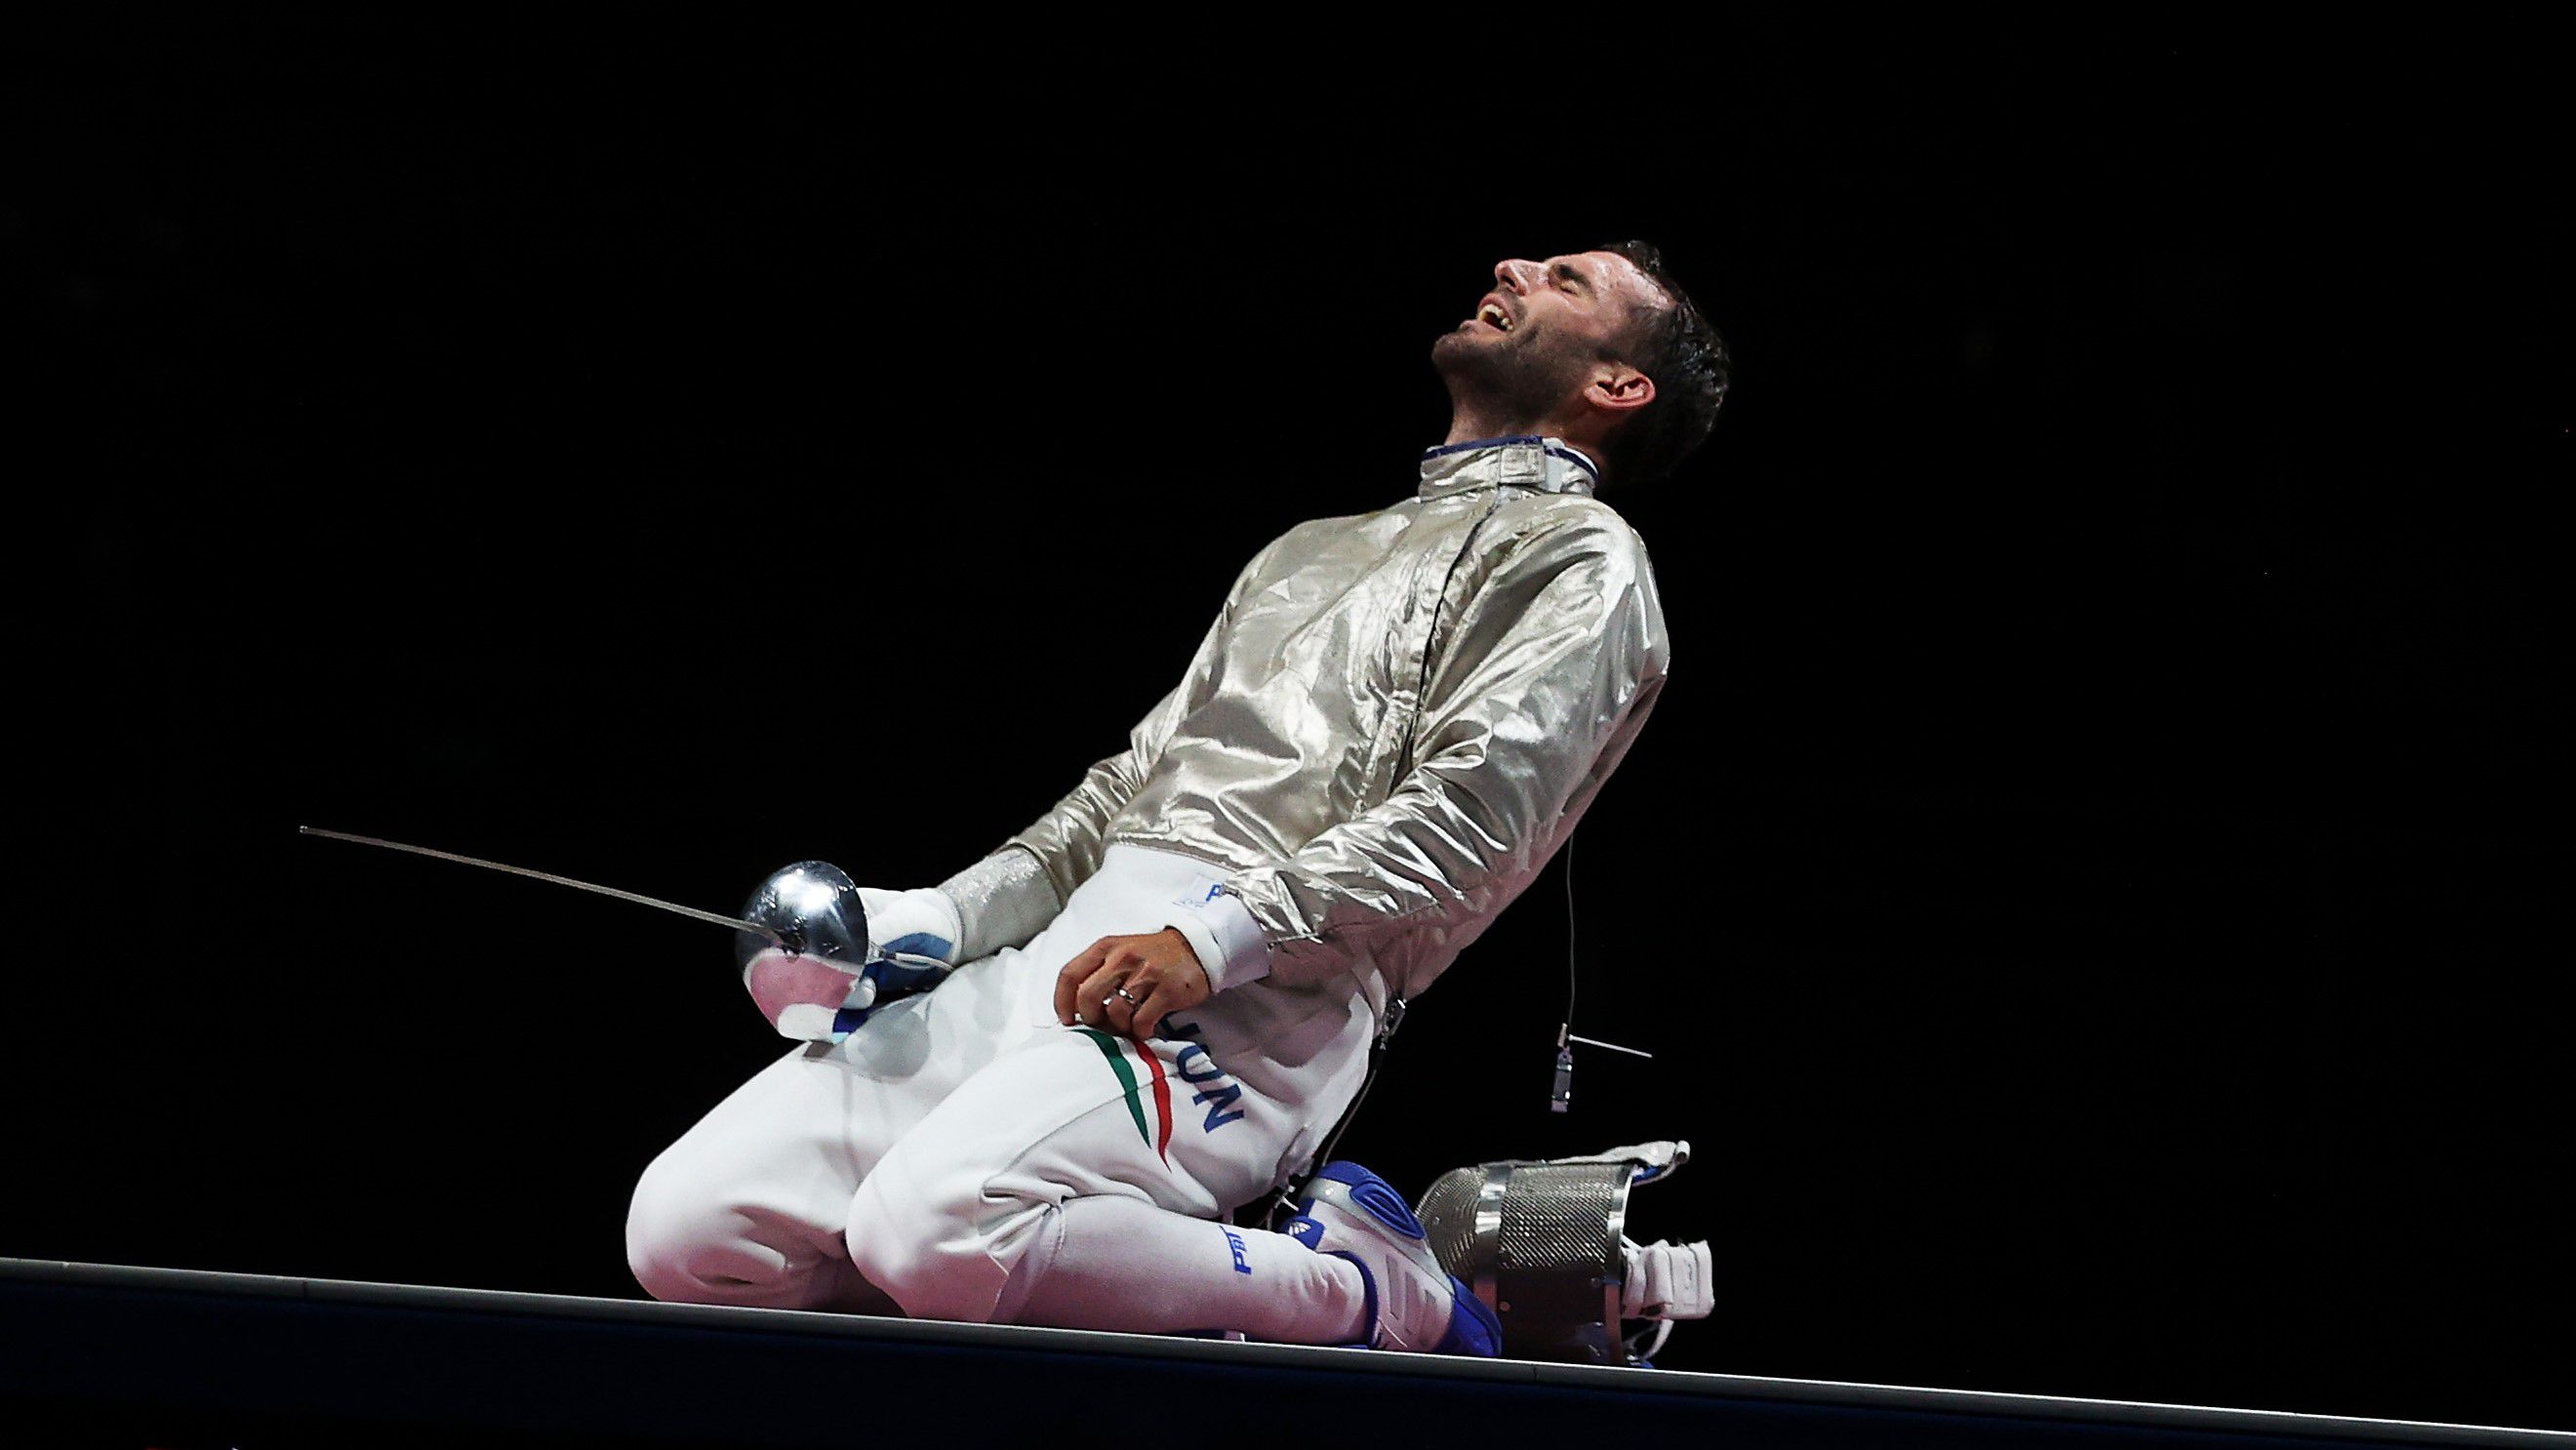 Így örült a tokiói olimpián a csapatbronznak (Fotó: Getty Images)